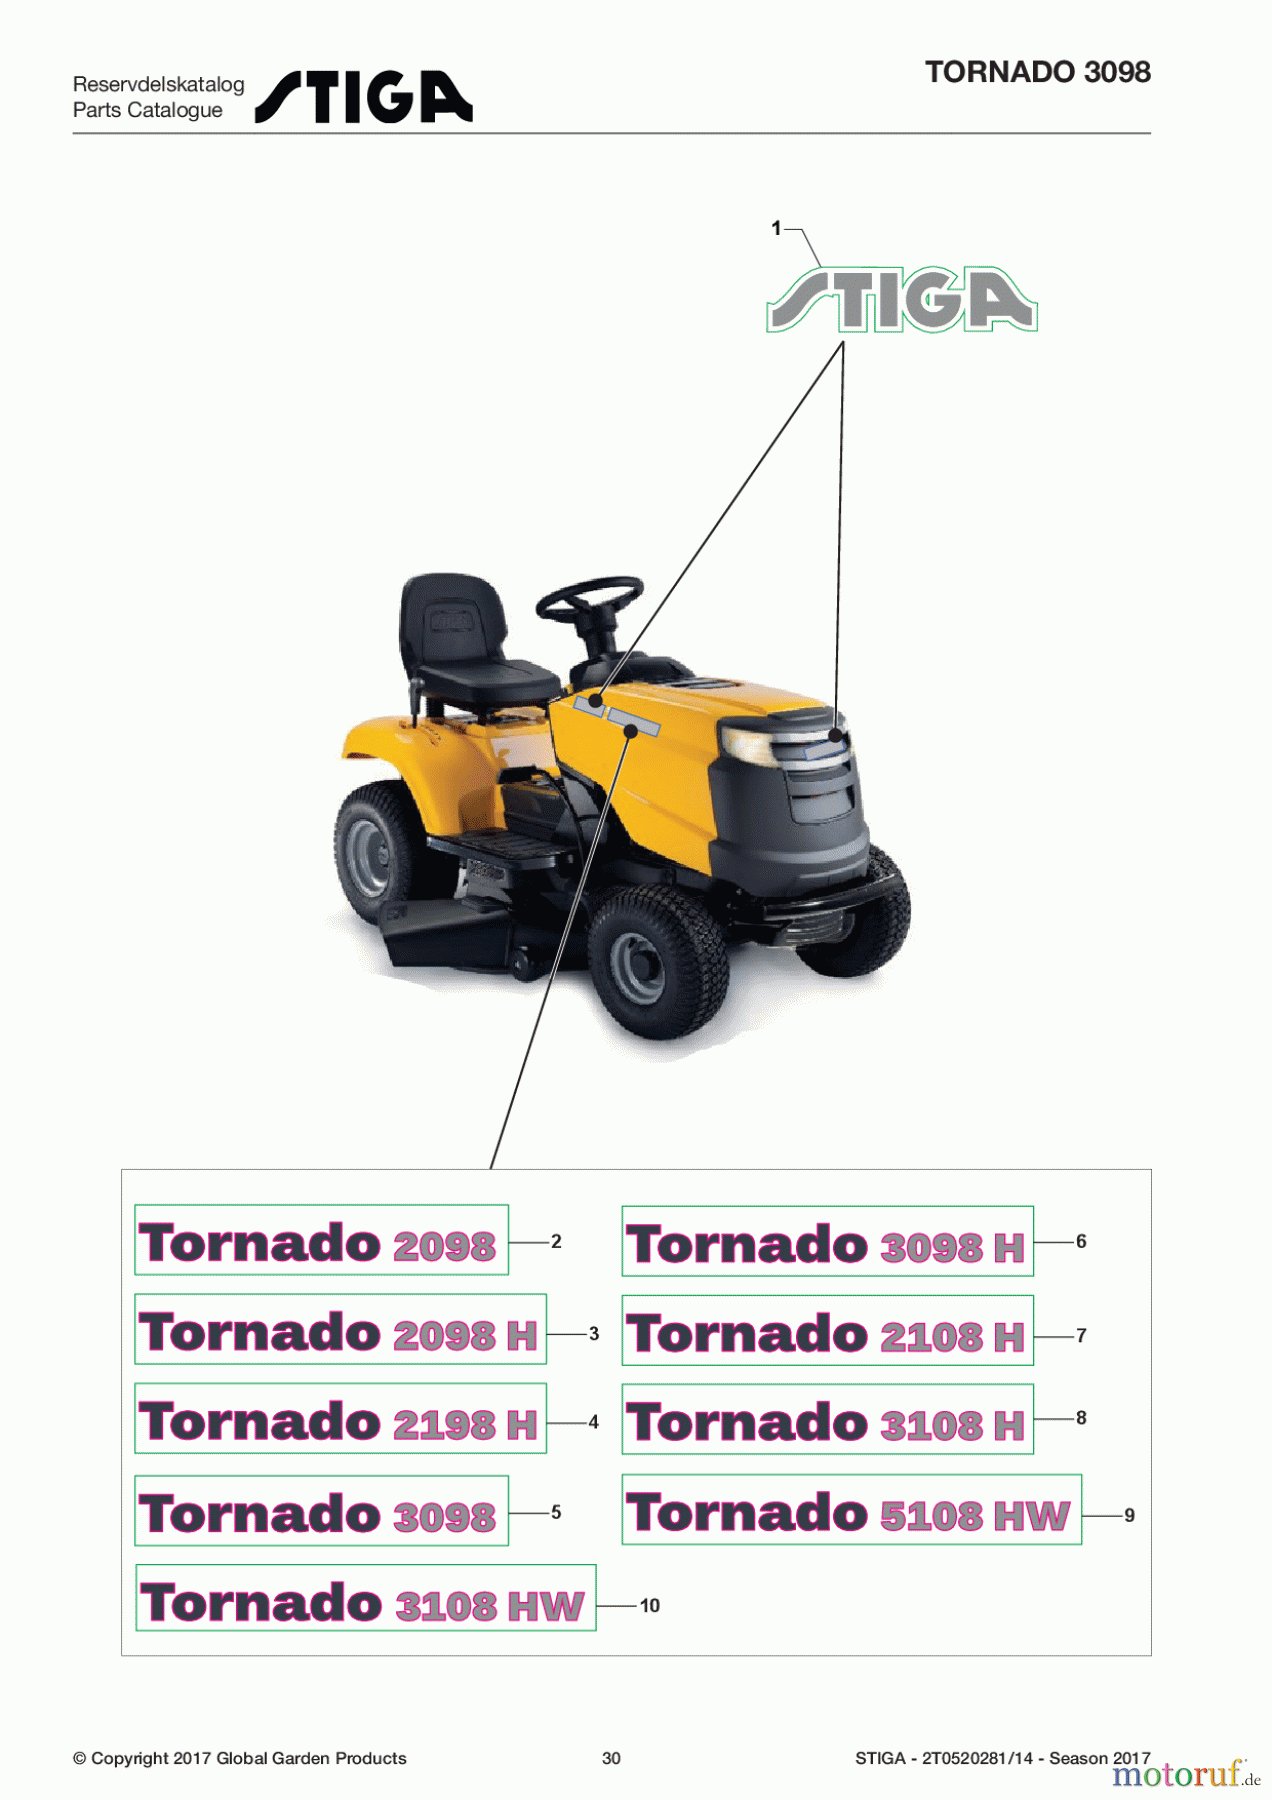  Stiga Rasentraktoren Estate, Tornado tractors 98 cm Seitenauswurf 2017 TORNADO 3098 2T0520281/14 - Season 2017 Labels